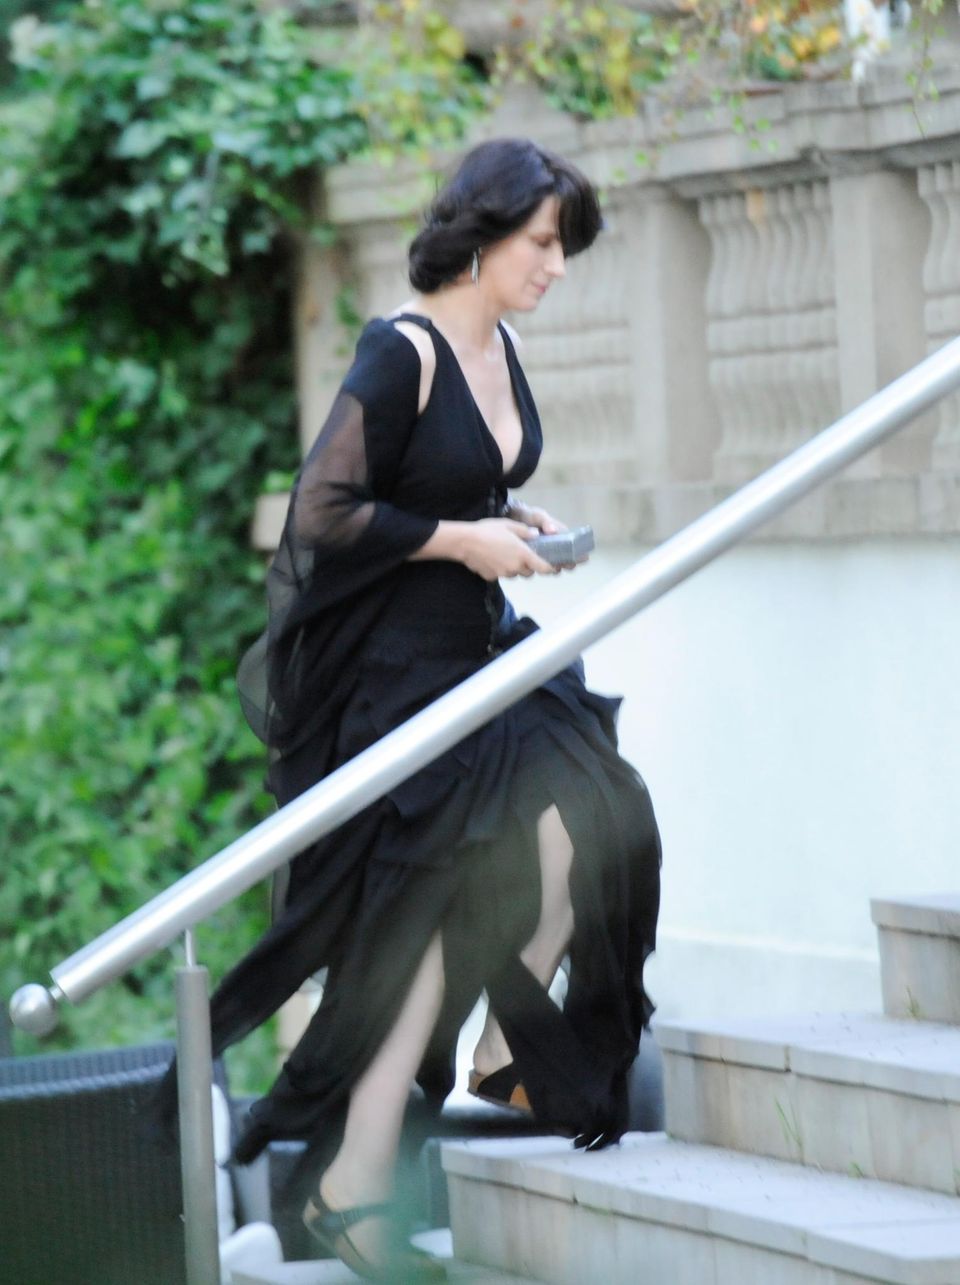 27. August 2013: Juliette Binoche dreht in Berlin den Film "Sils Maria". Auch Kristen Stewart ist für die Produktion in der Stadt.